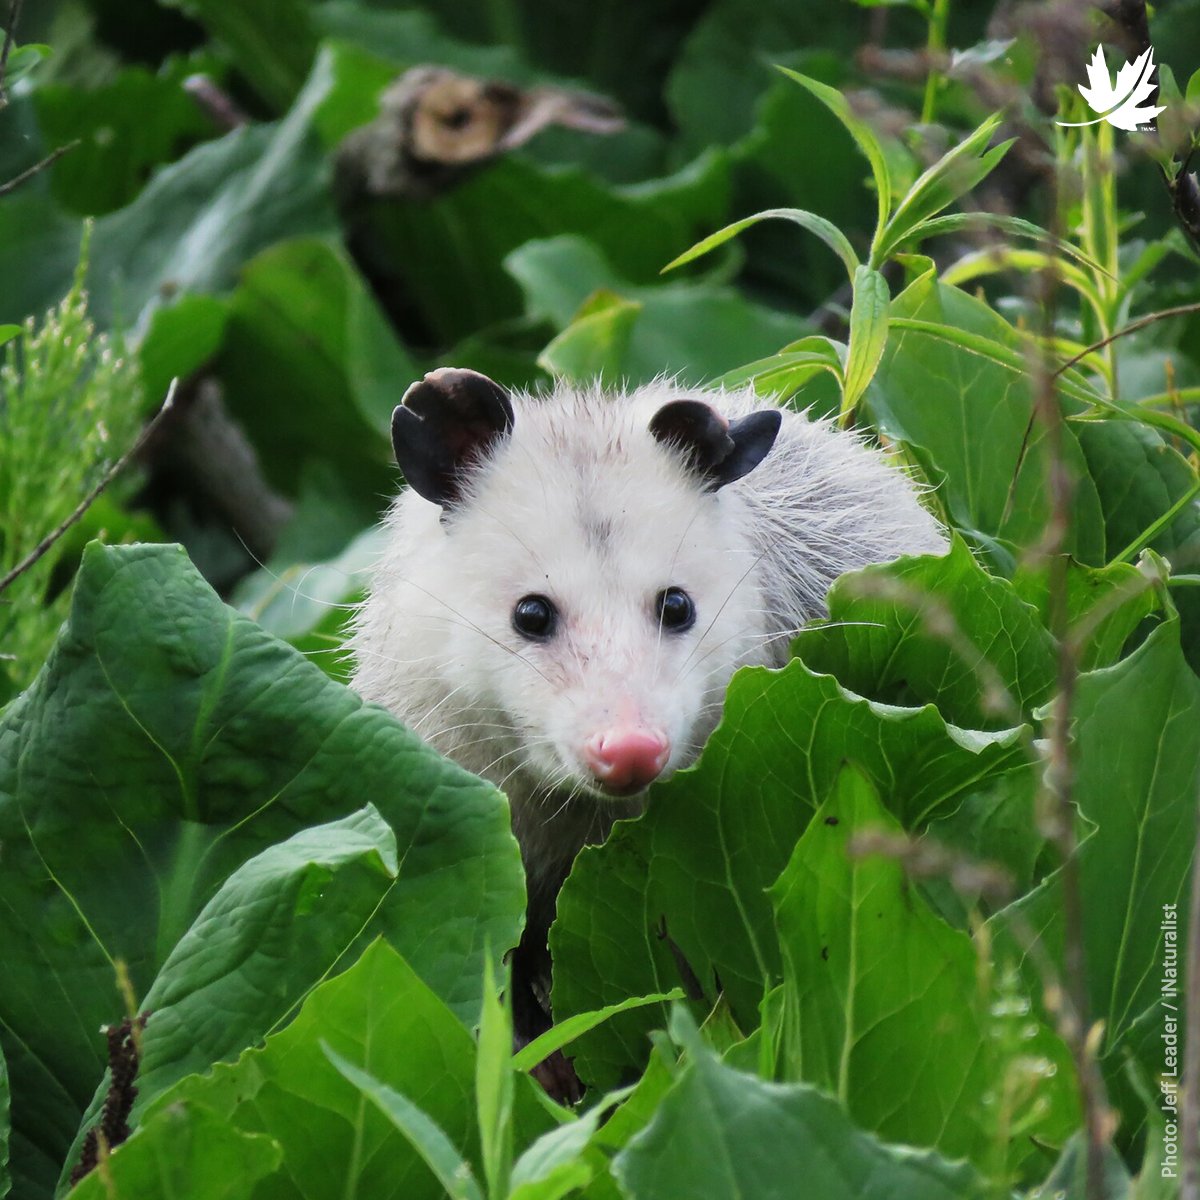 Saviez-vous que l'opossum était un animal « nettoyeur » et un allié de la nature? En effet, il se nourrit des fruits trop mûrs tombés au sol, recycle les matières organiques, assure le contrôle de parasites et favorise la biodiversité!